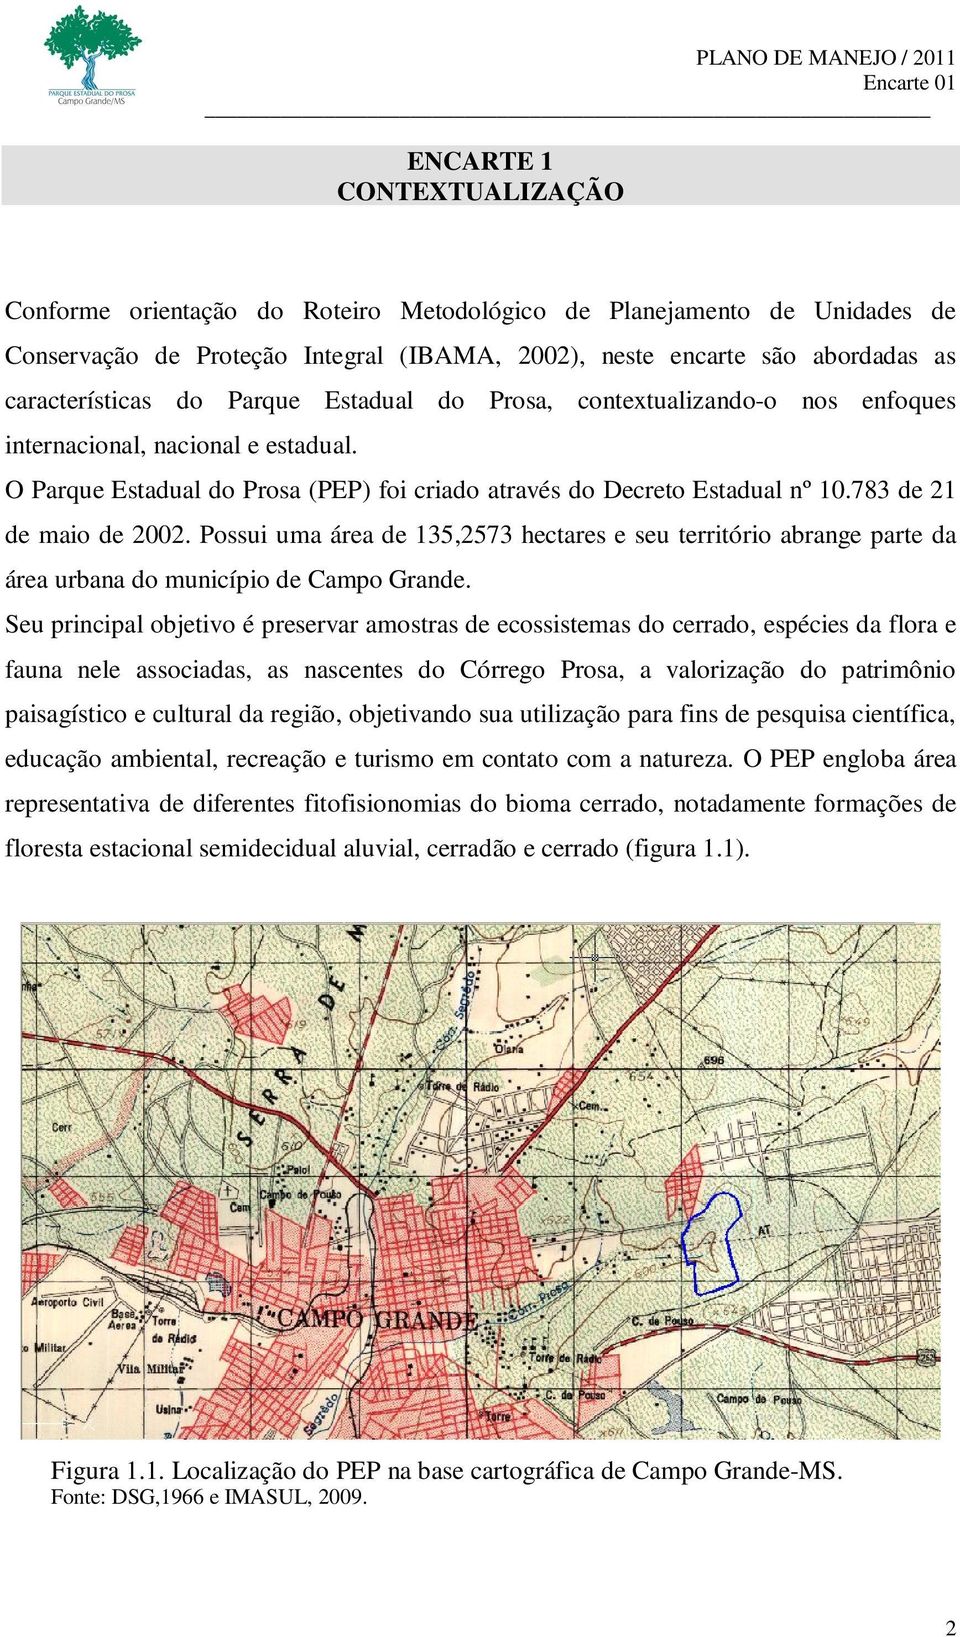 783 de 21 de maio de 2002. Possui uma área de 135,2573 hectares e seu território abrange parte da área urbana do município de Campo Grande.